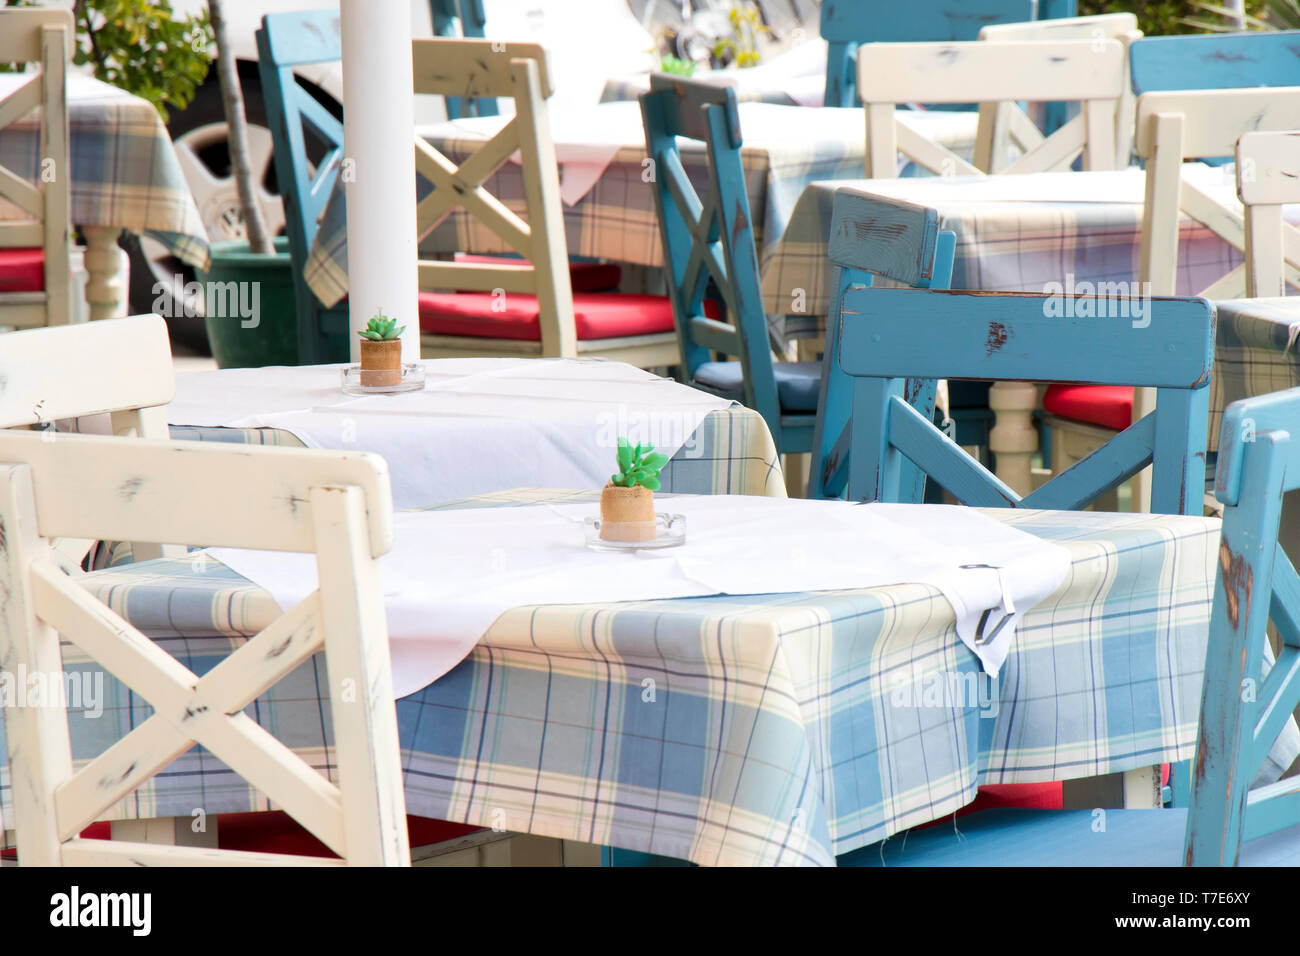 Tische und Stühle in eine typische traditionelle mediterrane Restaurant auf  der Terrasse in Hellblau und Weiß mit karierten Tischdecken, Detail  Stockfotografie - Alamy